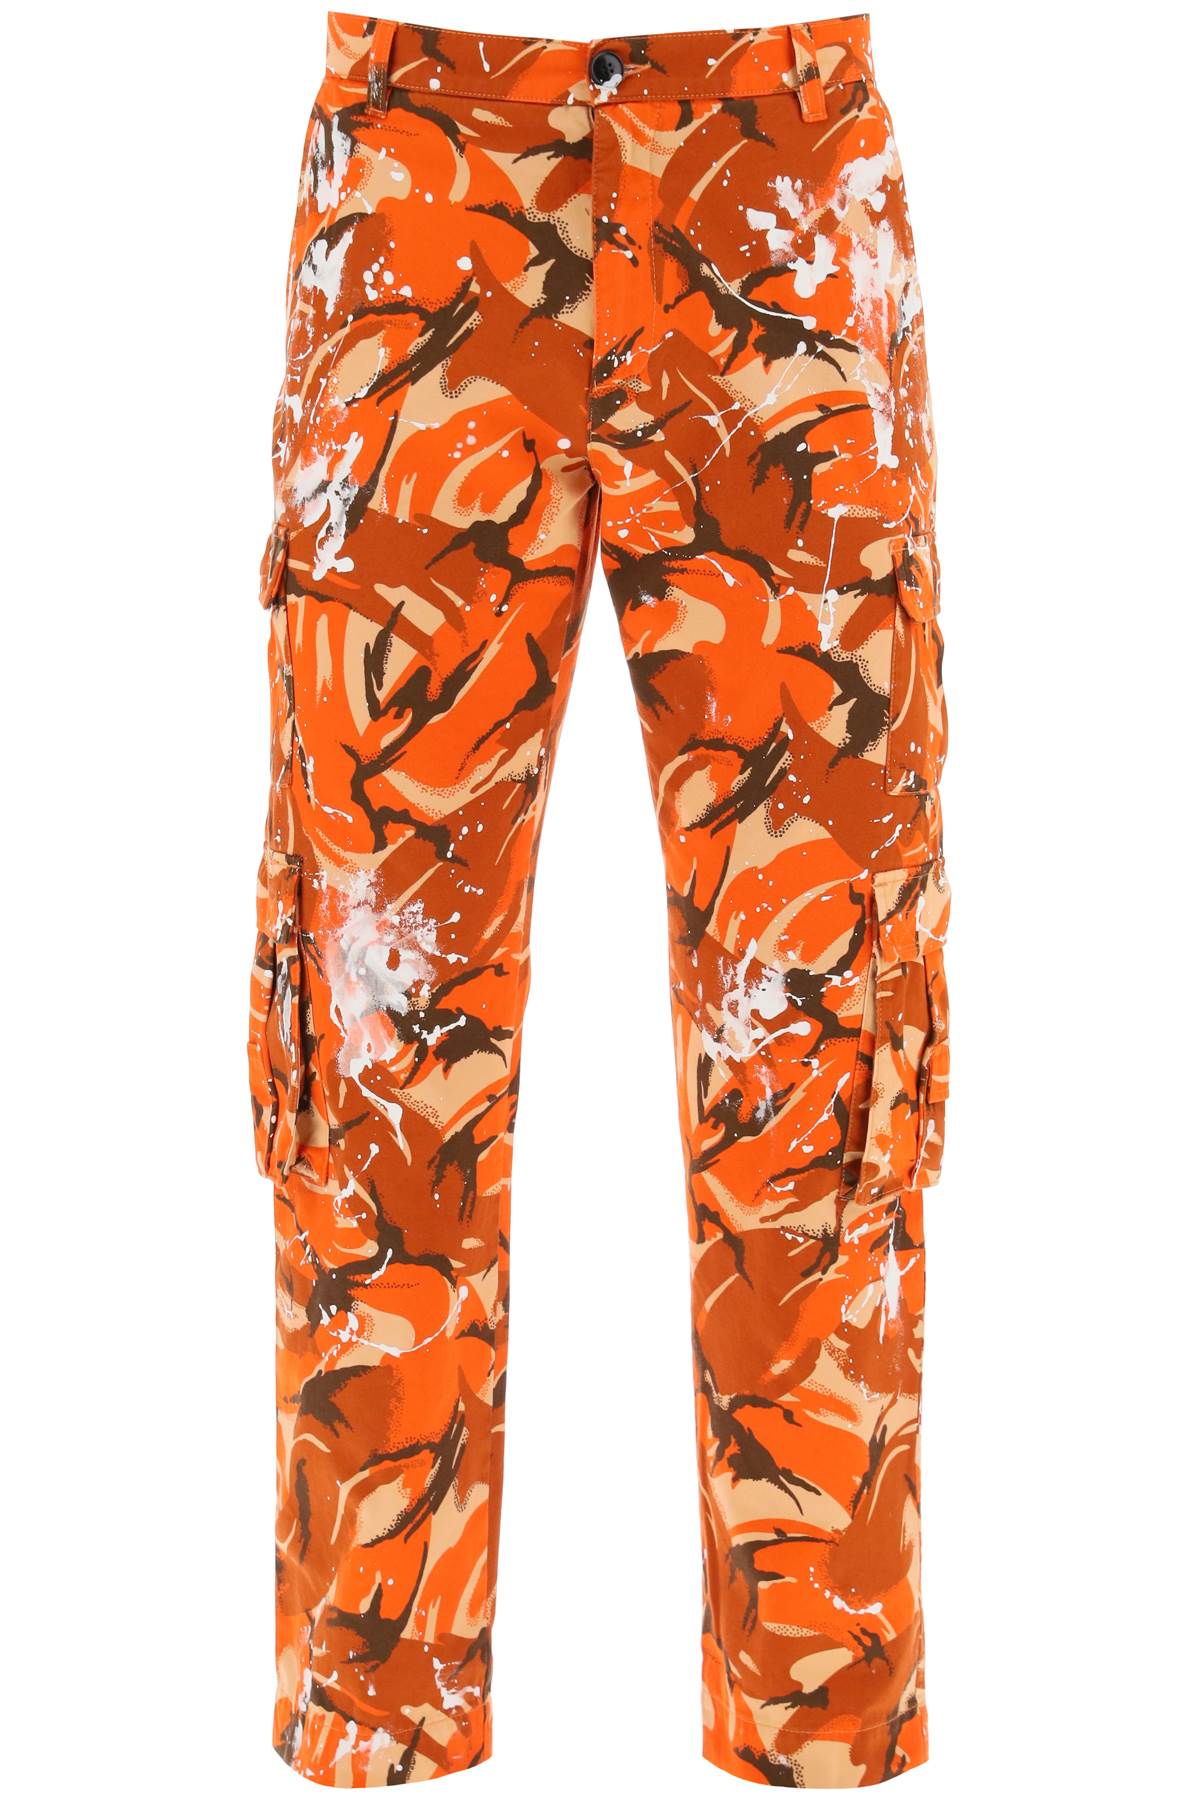 Martine Rose Camouflage Cargo Pants   Orange